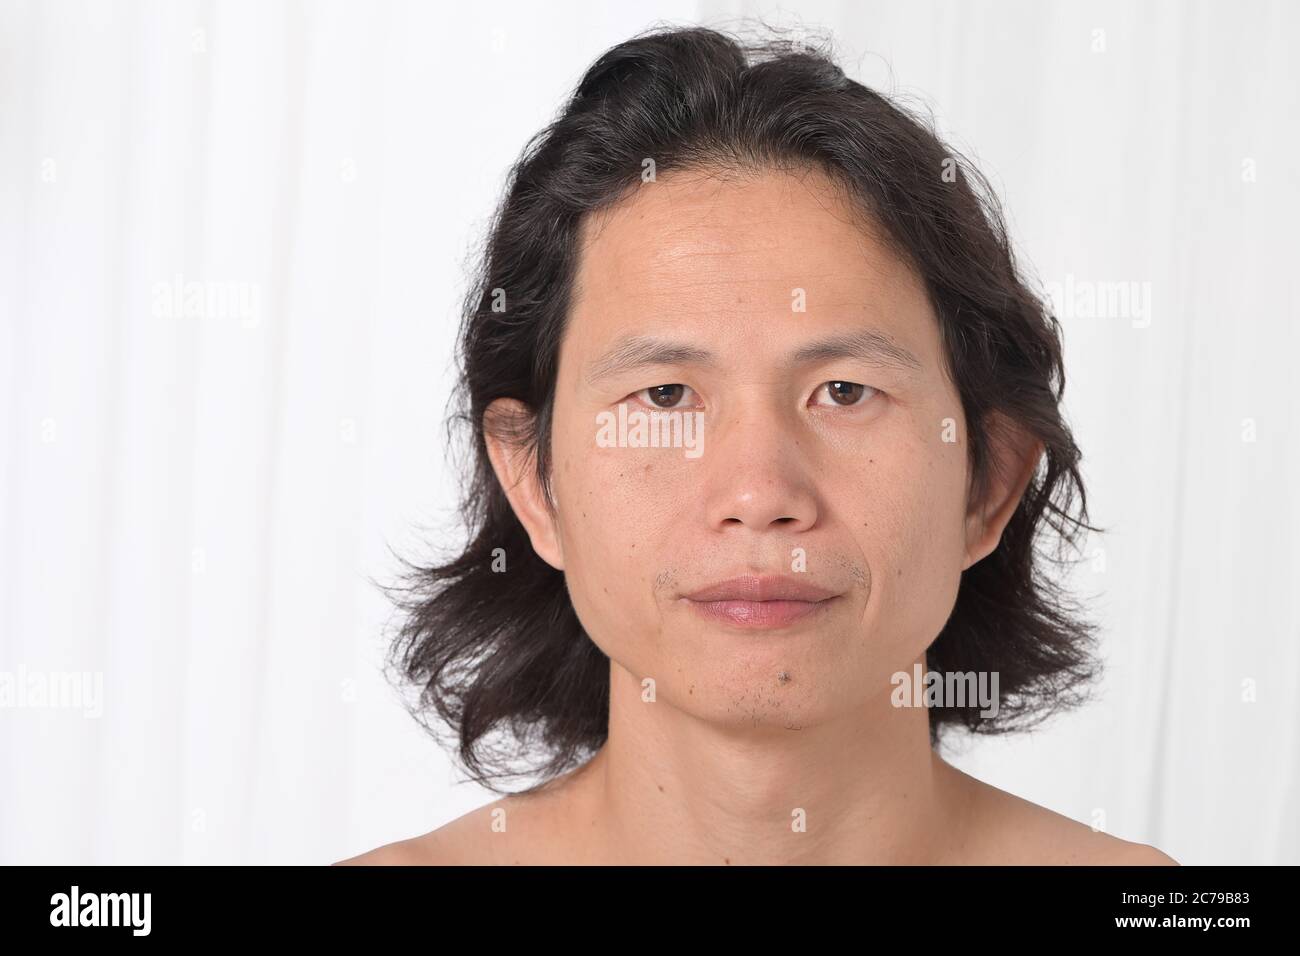 Gesichtsbehandlung: Asiatische Männer im Alter von 35-40 Jahren mit problematischer Haut, Akne-Narben, Falten und dunklen Flecken, Mangel an Hautpflege trockene Haut fehlt Feuchtigkeit Stockfoto